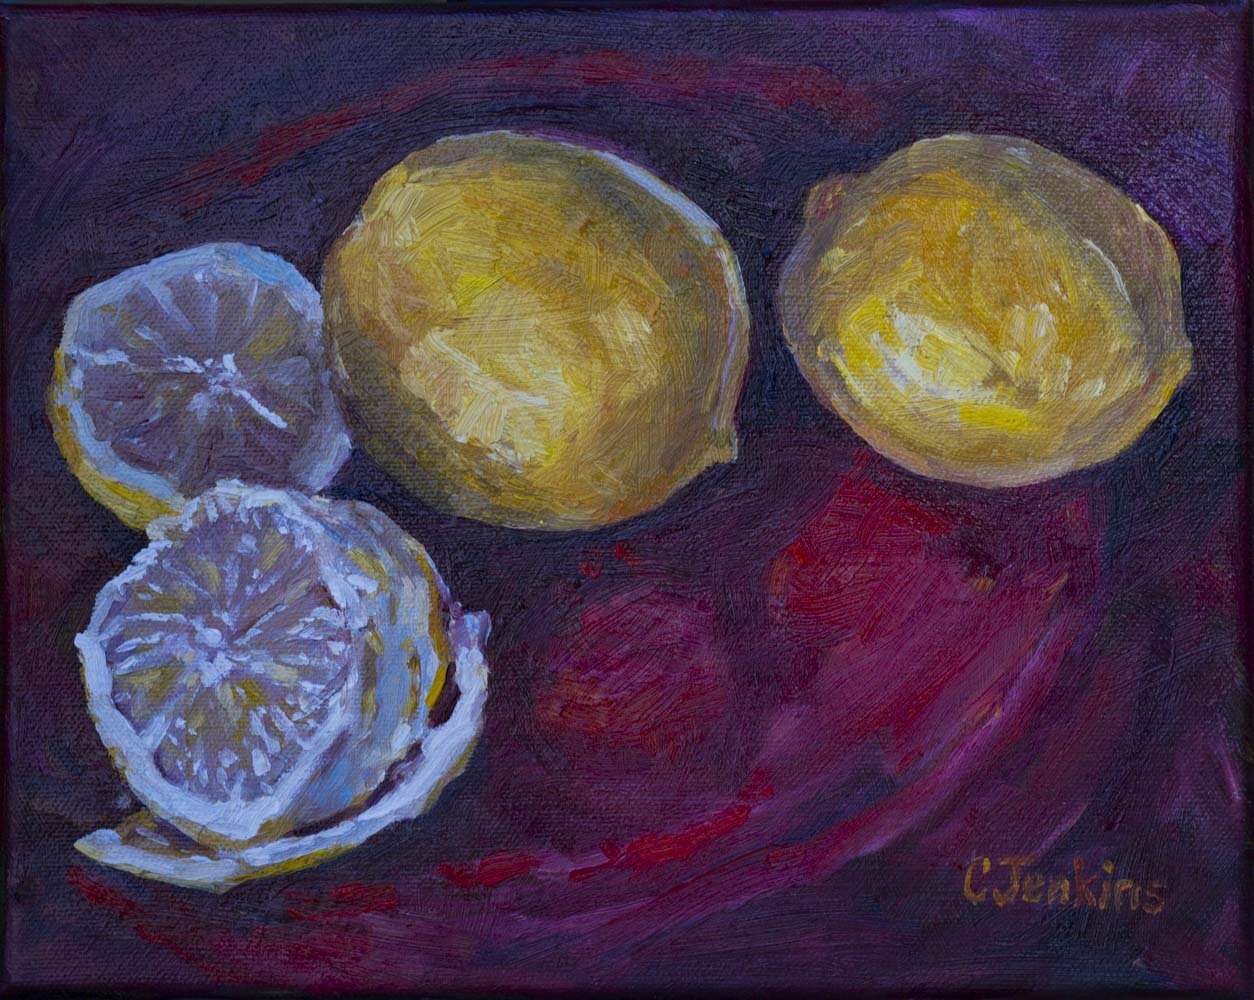 lemons on red plate.jpg